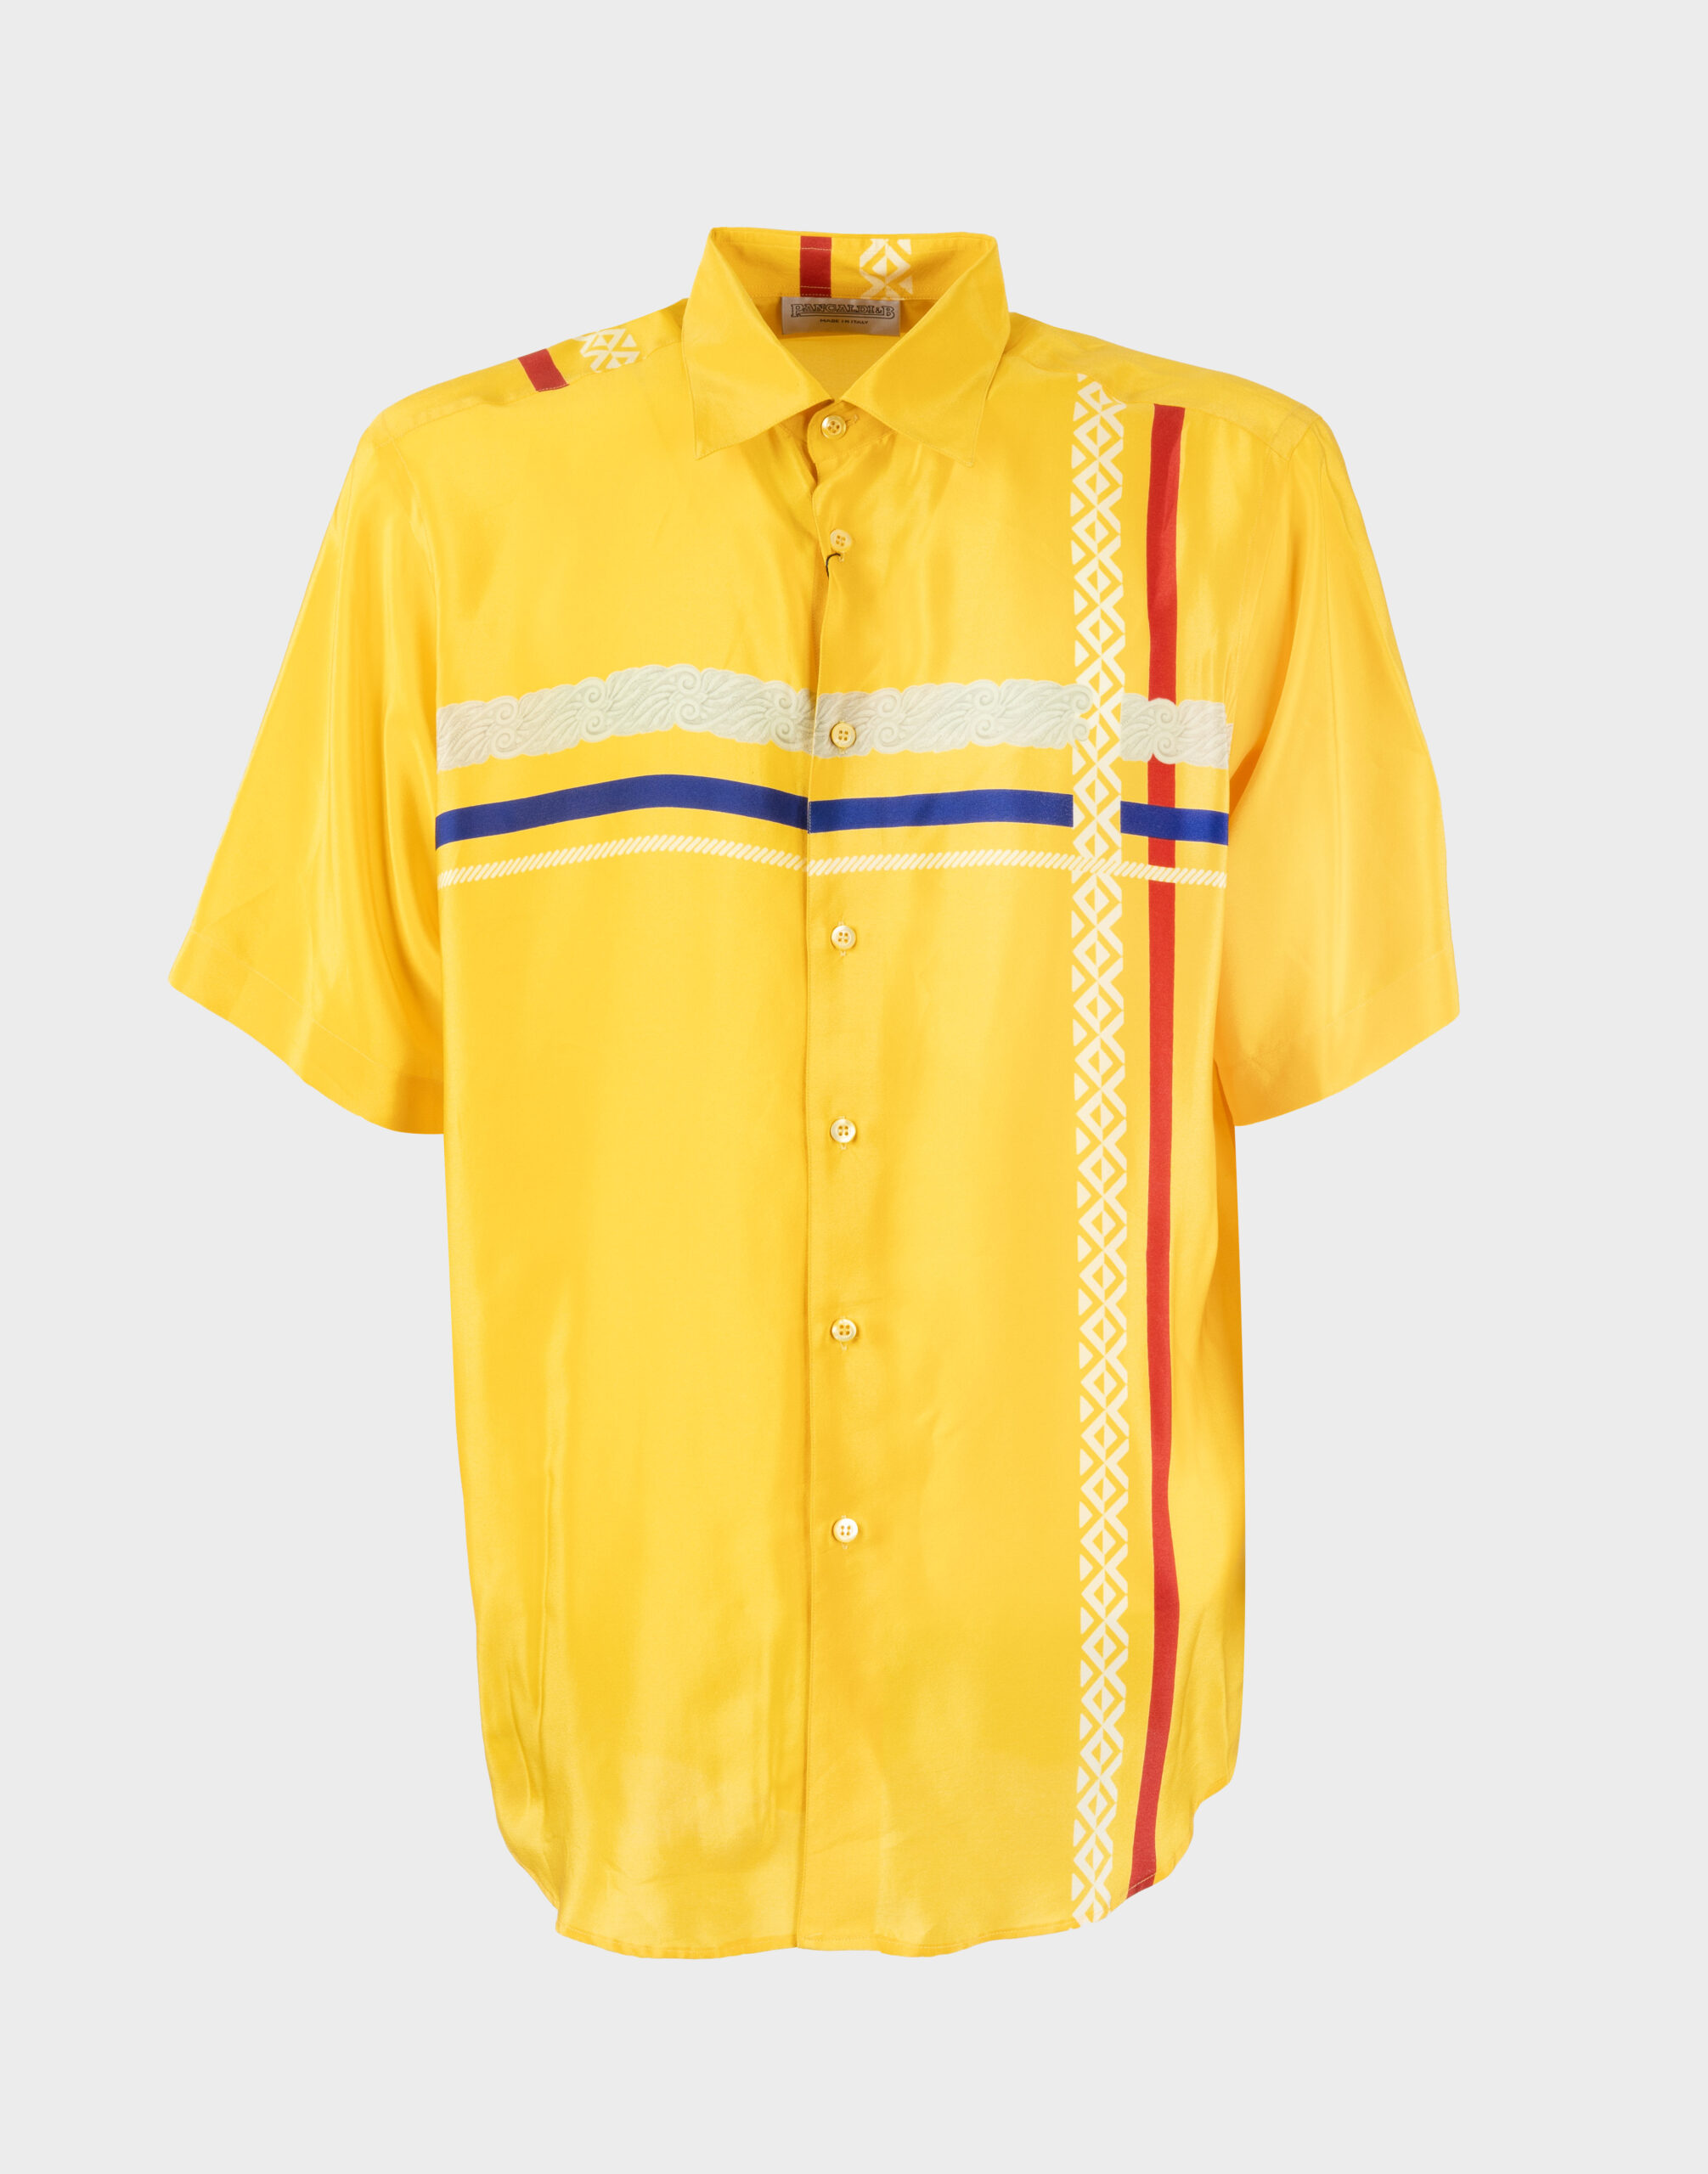 camicia da uomo gialla a maniche corte con fantasia colorata sul davanti